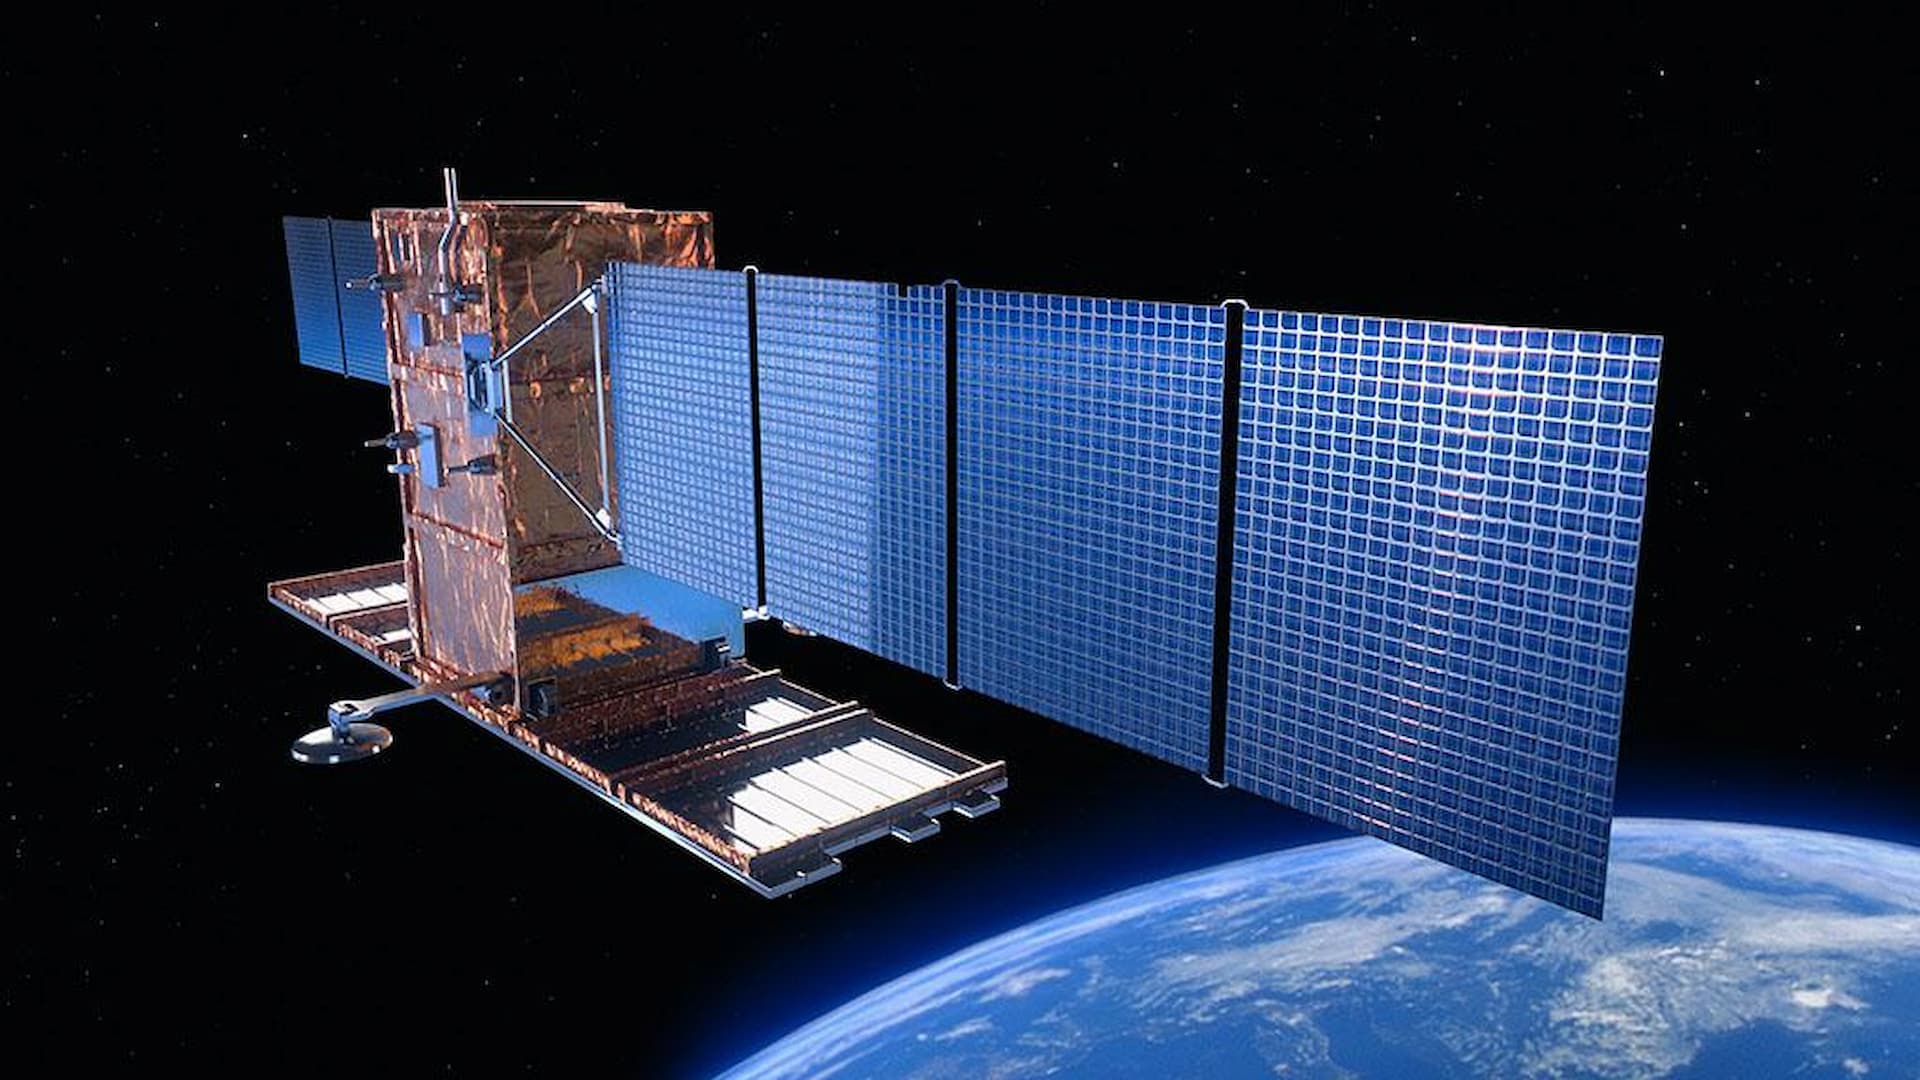 ASI - Il secondo satellite COSMO-SkyMed di Seconda Generazione (CSG) diventa operativo rafforzando ancora di più il consolidato ruolo e il contributo dell’Italia nel campo dell’Osservazione della Terra